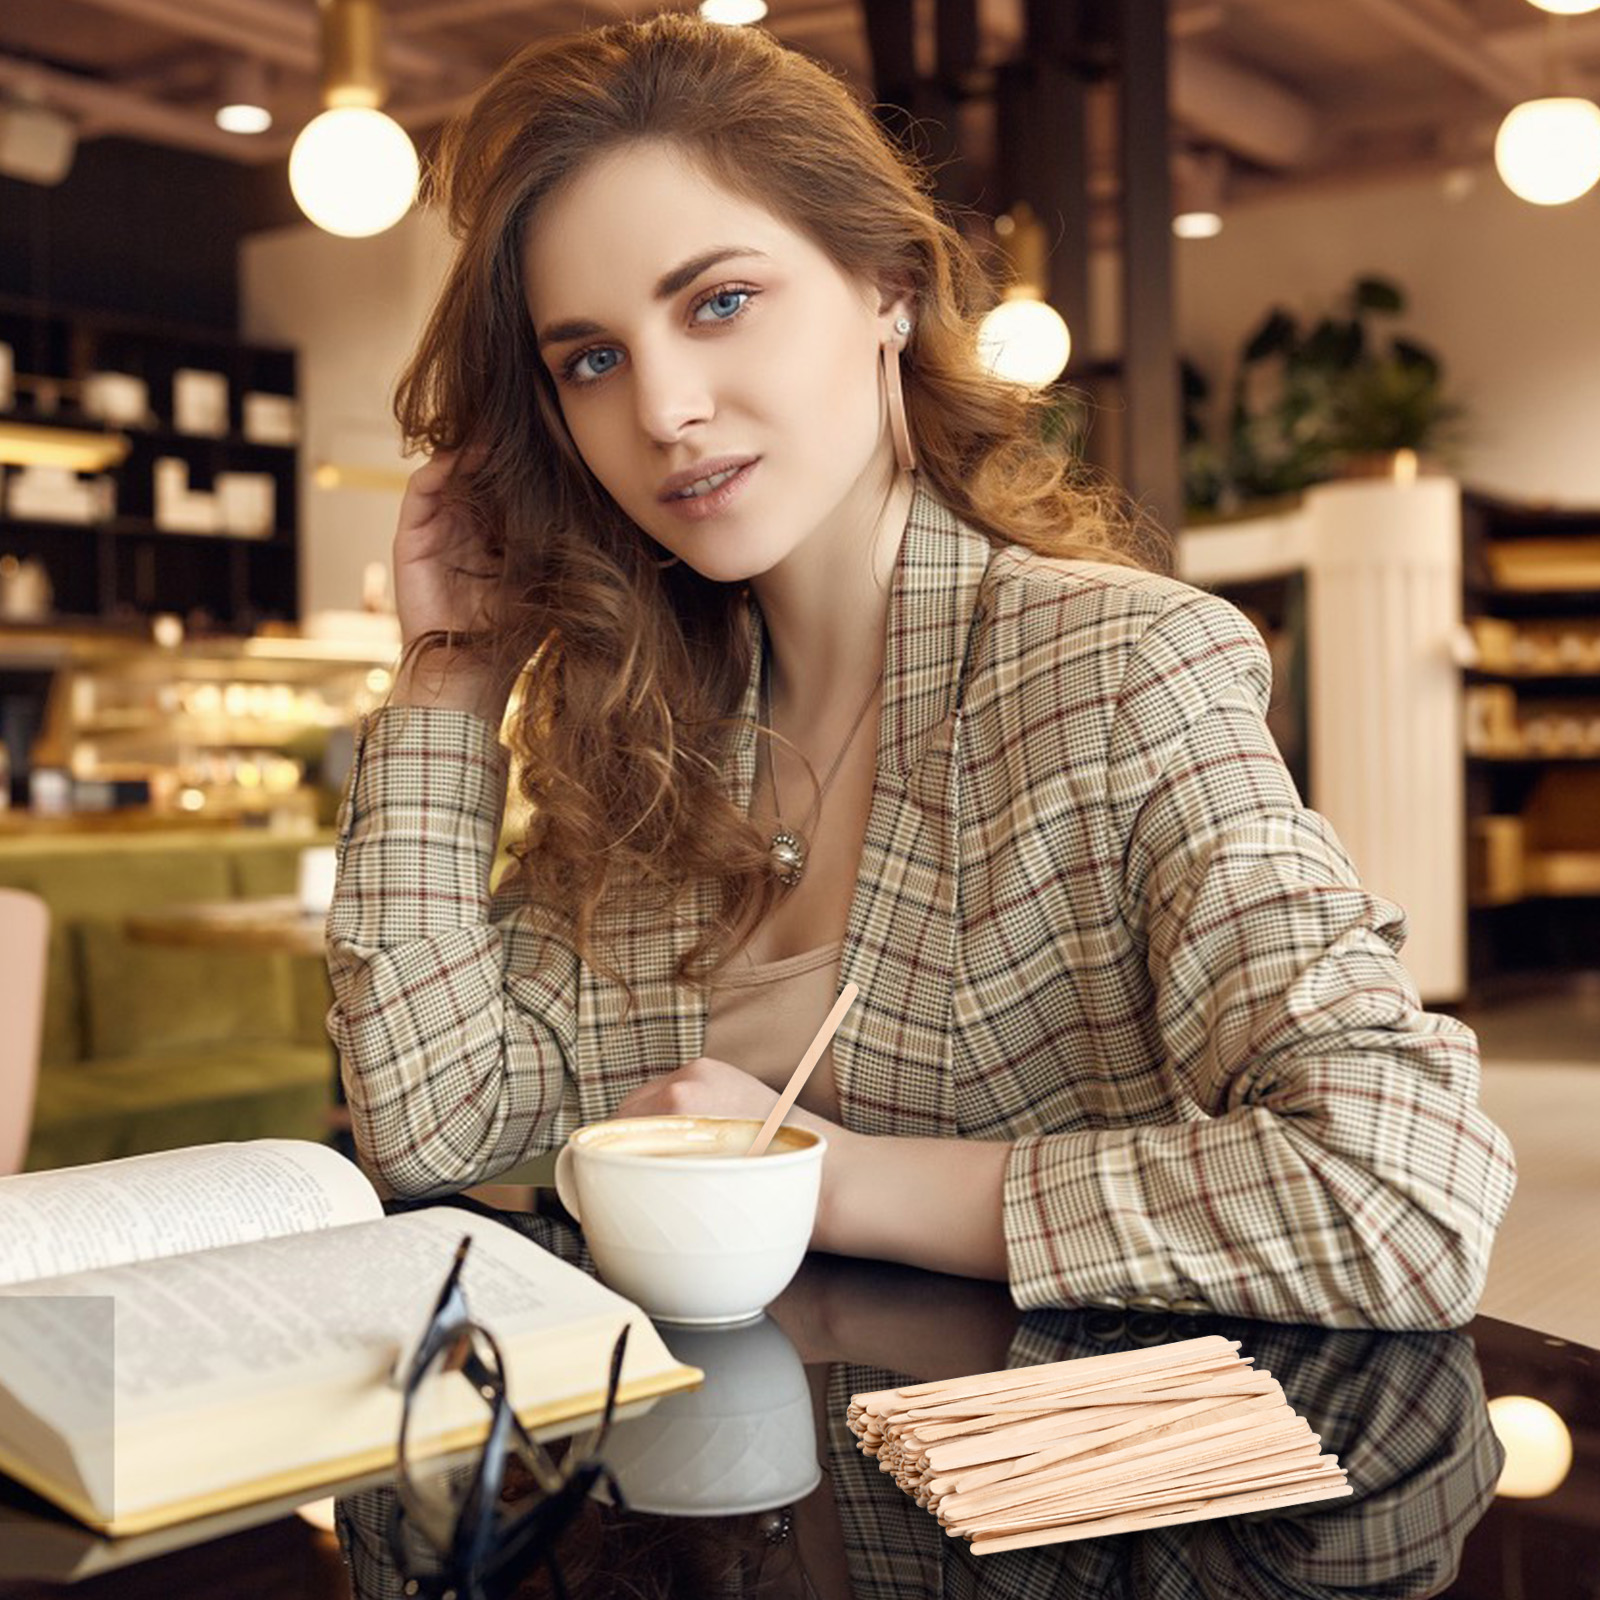 Читаю книги пью кофе. Красивая женщина в кафе. Чтение в кофейне. Женщина пьет кофе. Счастливые люди пьют кофе и читают книги.